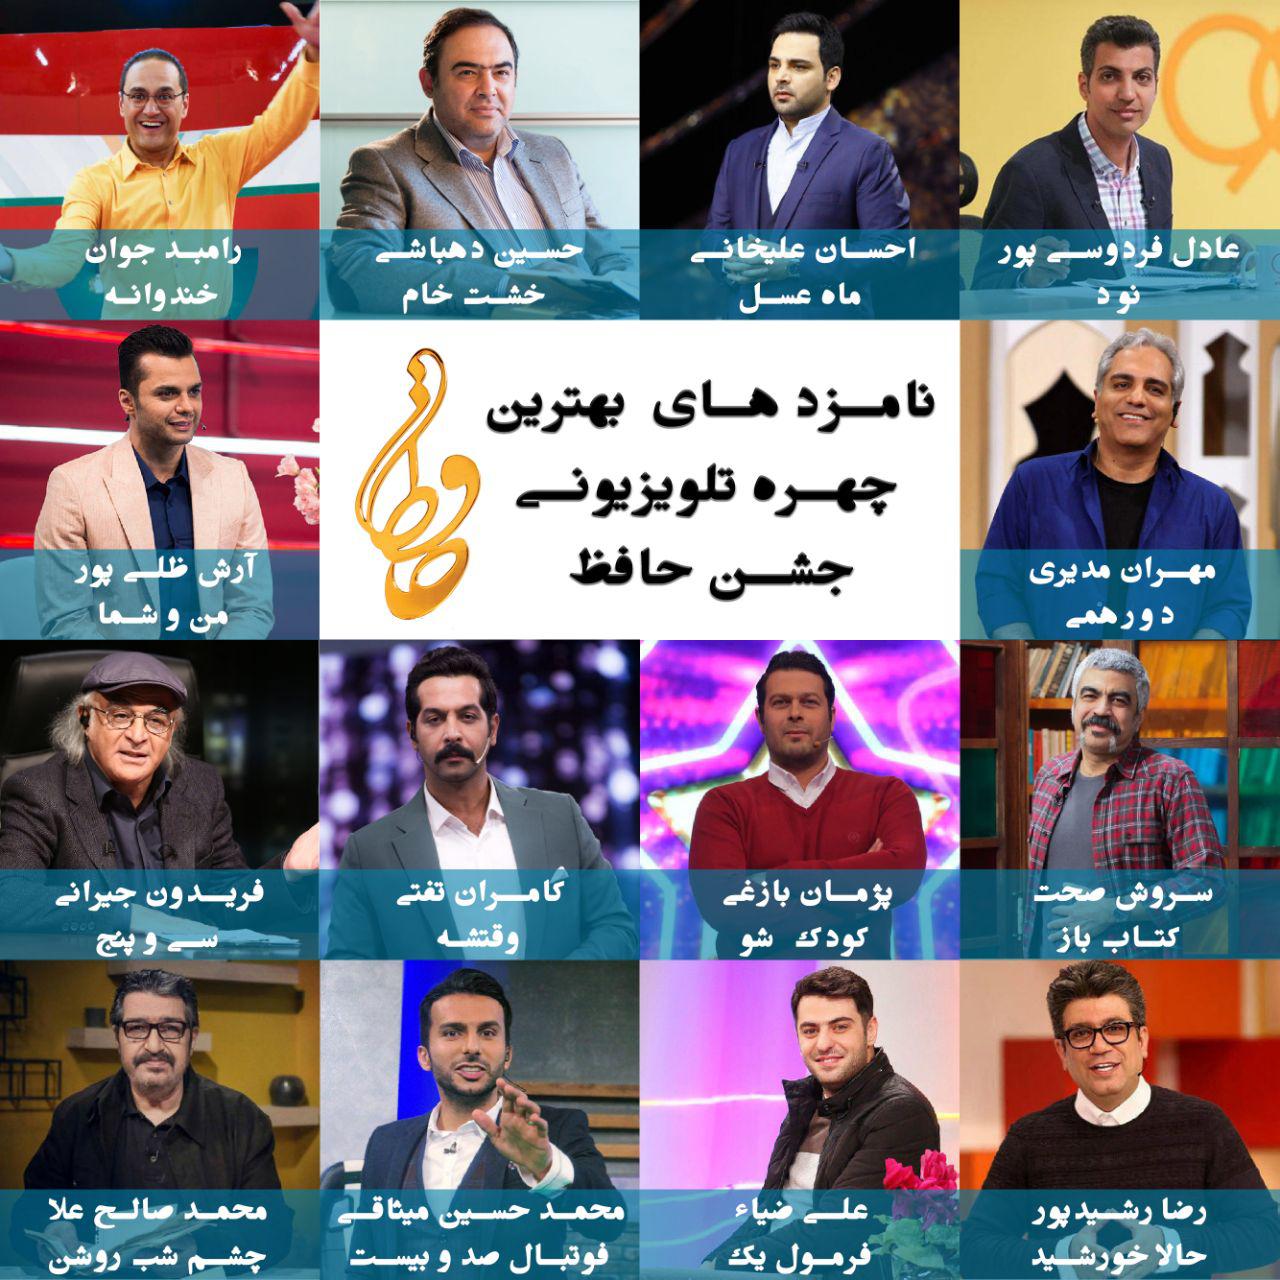 نامزدهای بهترین چهره تلویزیونی هجدهمین جشن حافظ اعلام شدند.